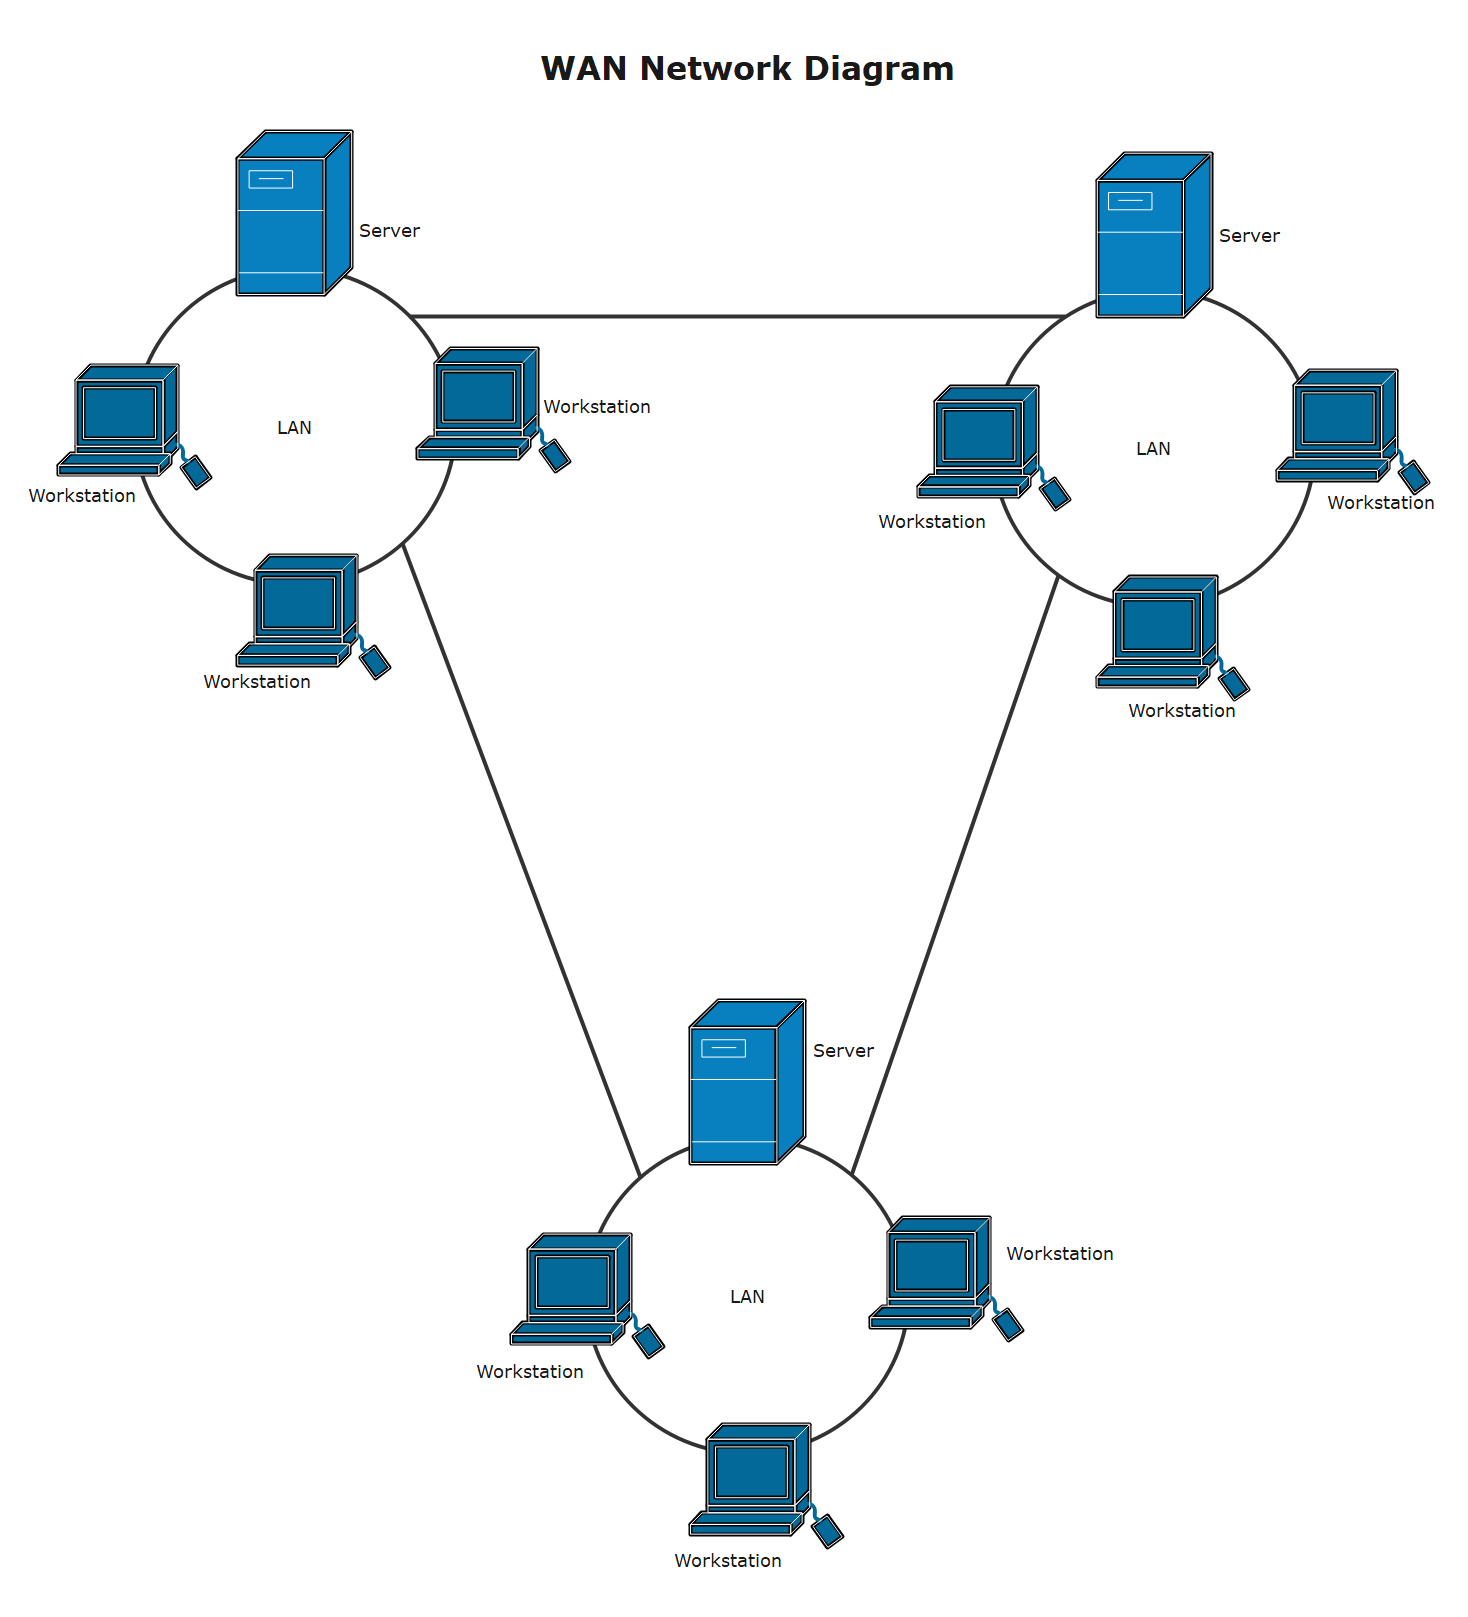 コンピュータネットワークにおけるWAN